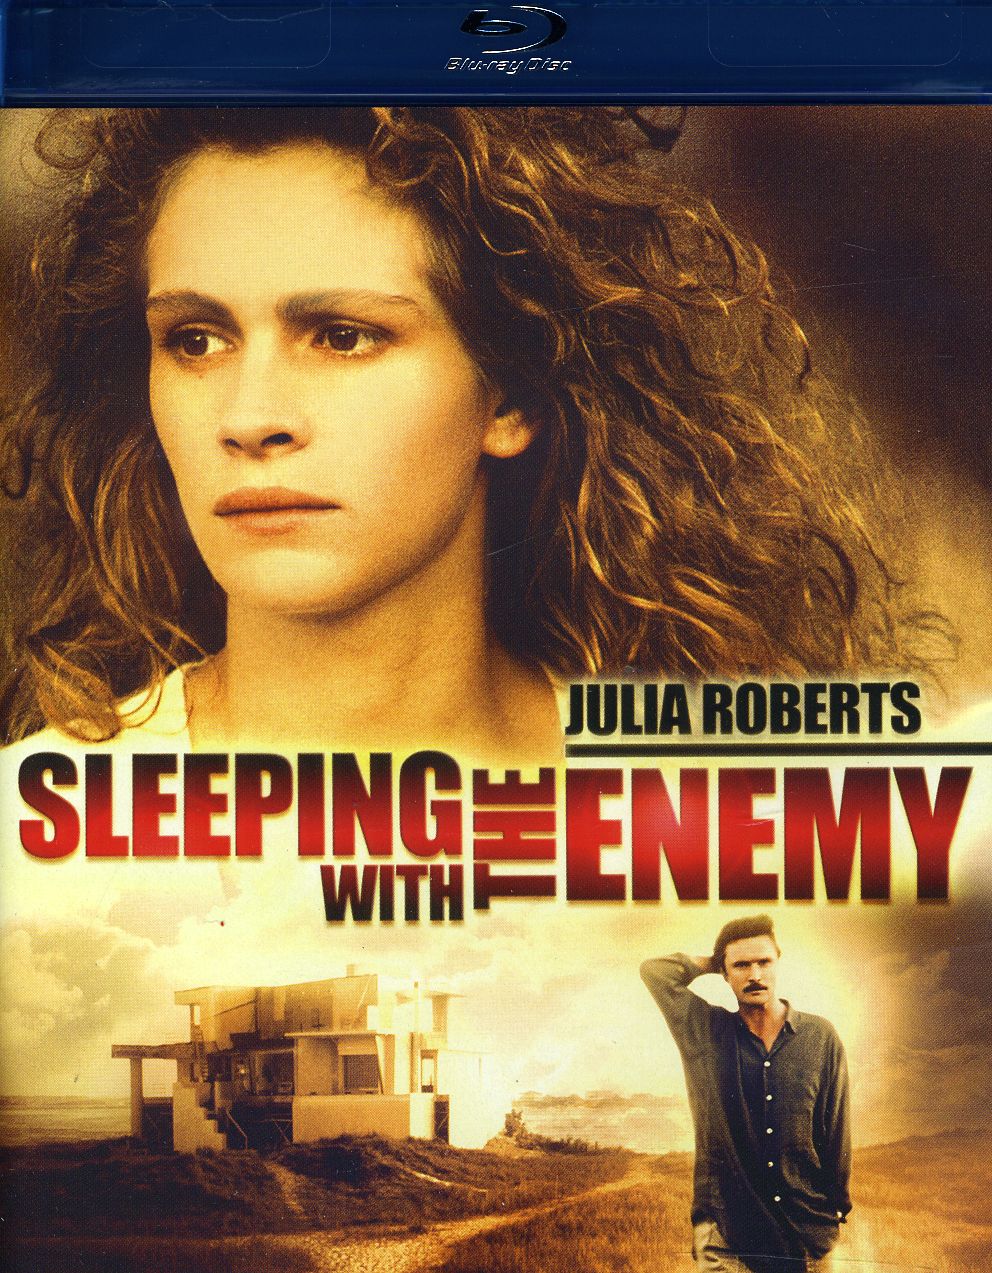 SLEEPING WITH ENEMY (1991) / (AC3 DOL DTS DUB SUB)